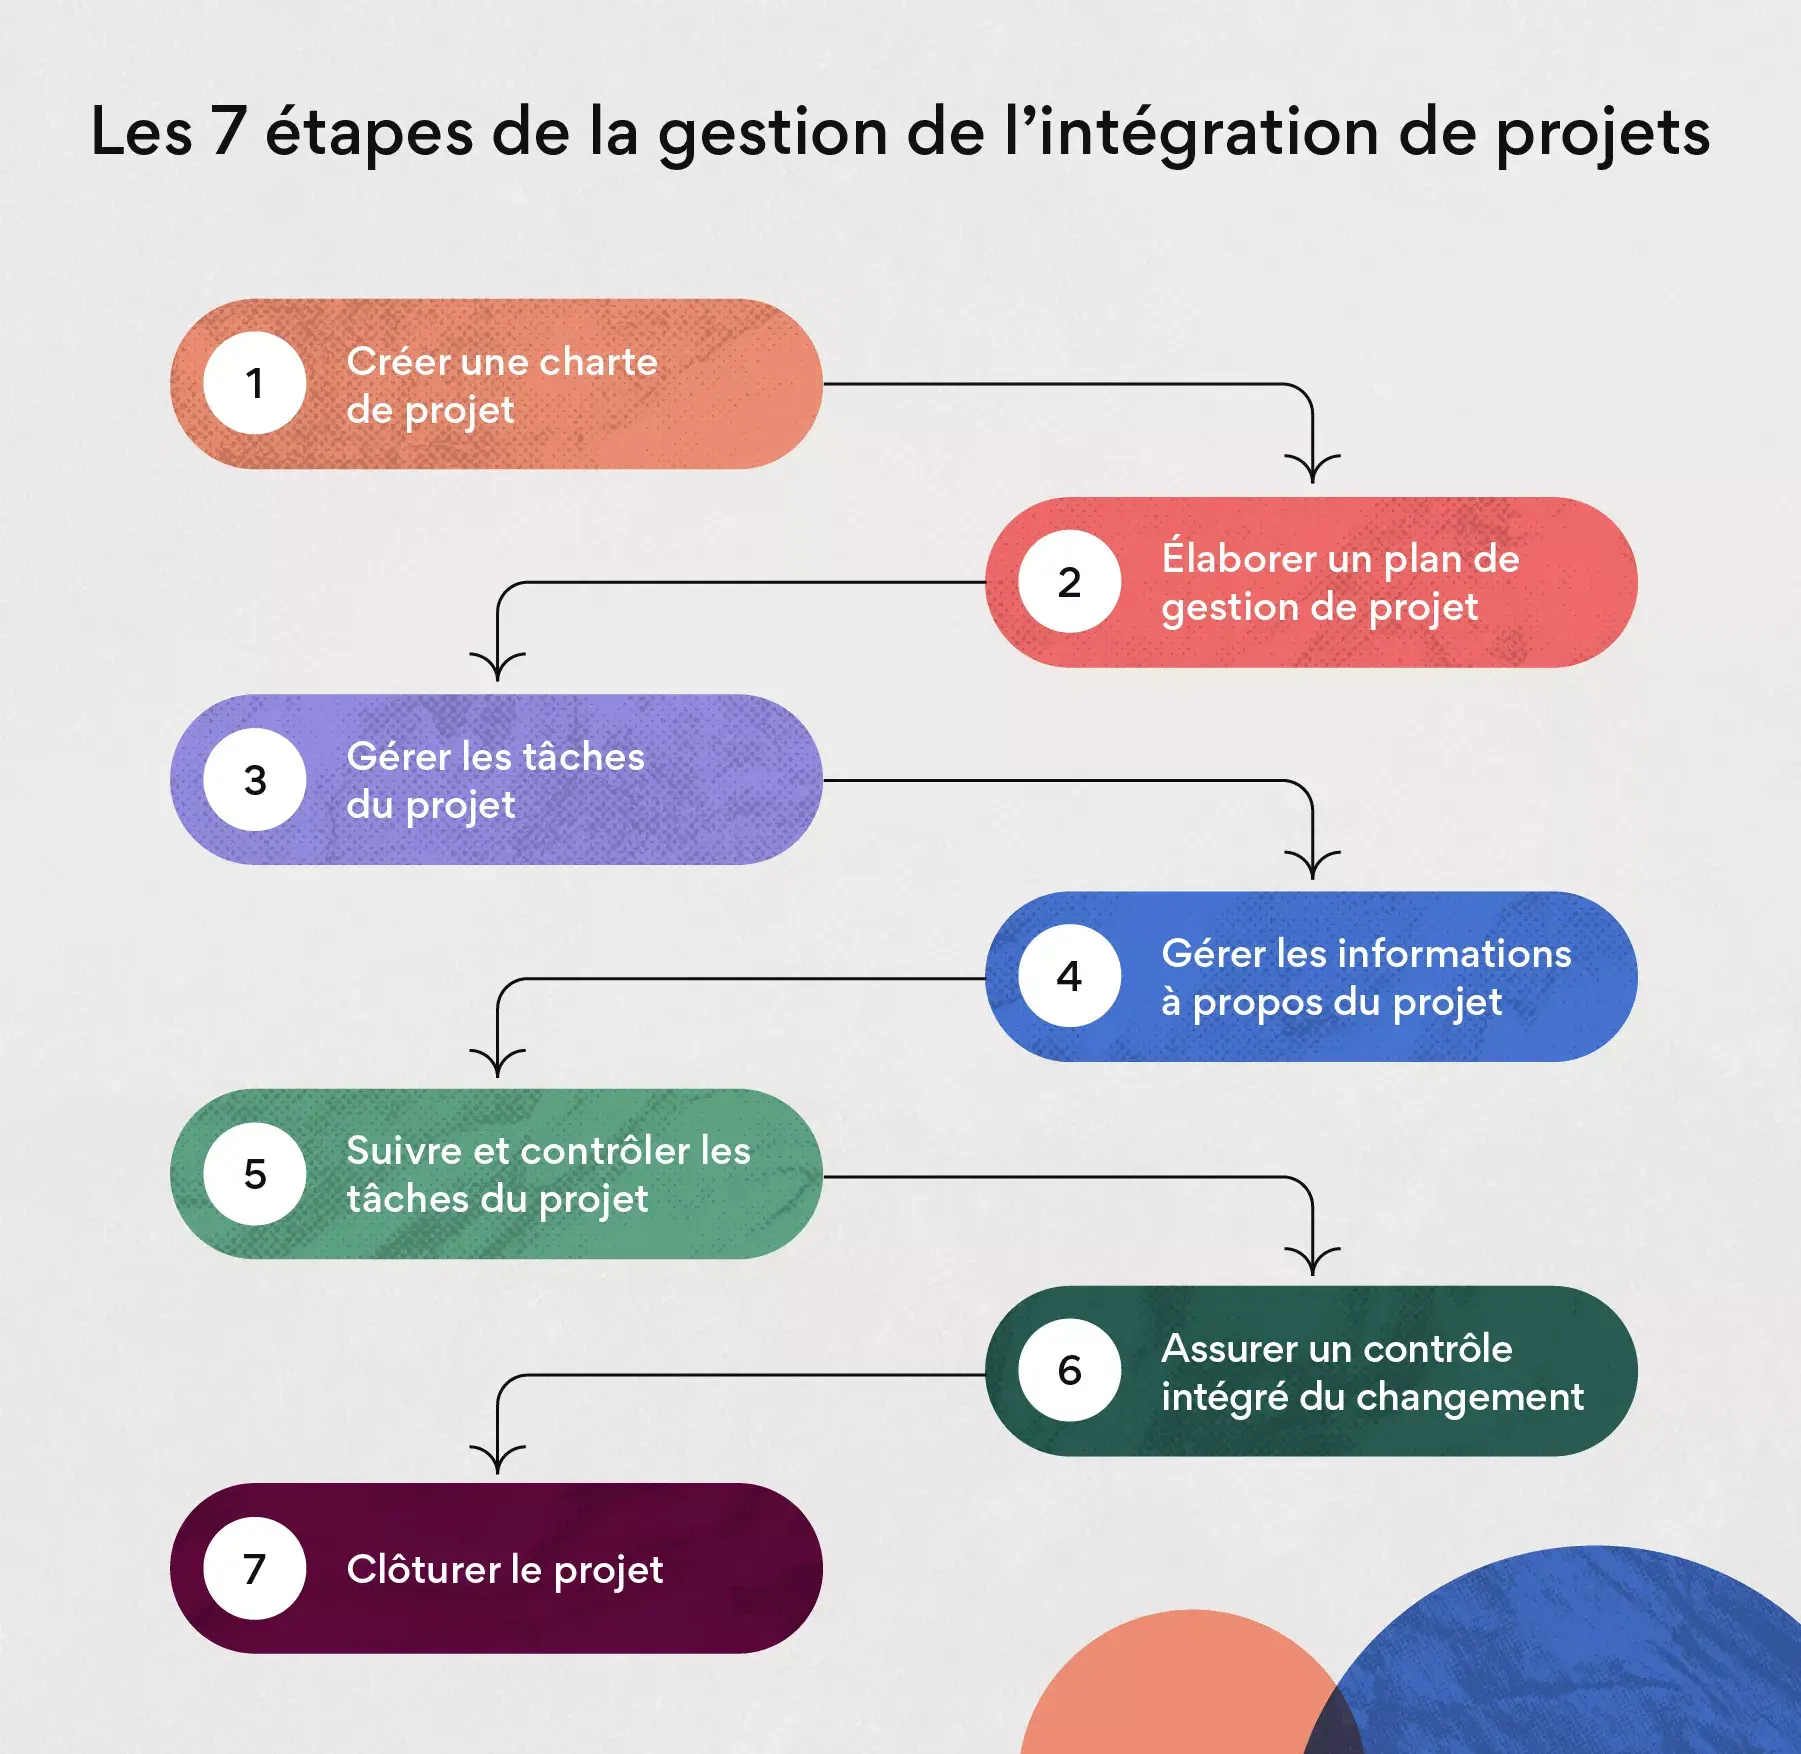 Les 7 étapes de la gestion de l’intégration de projets